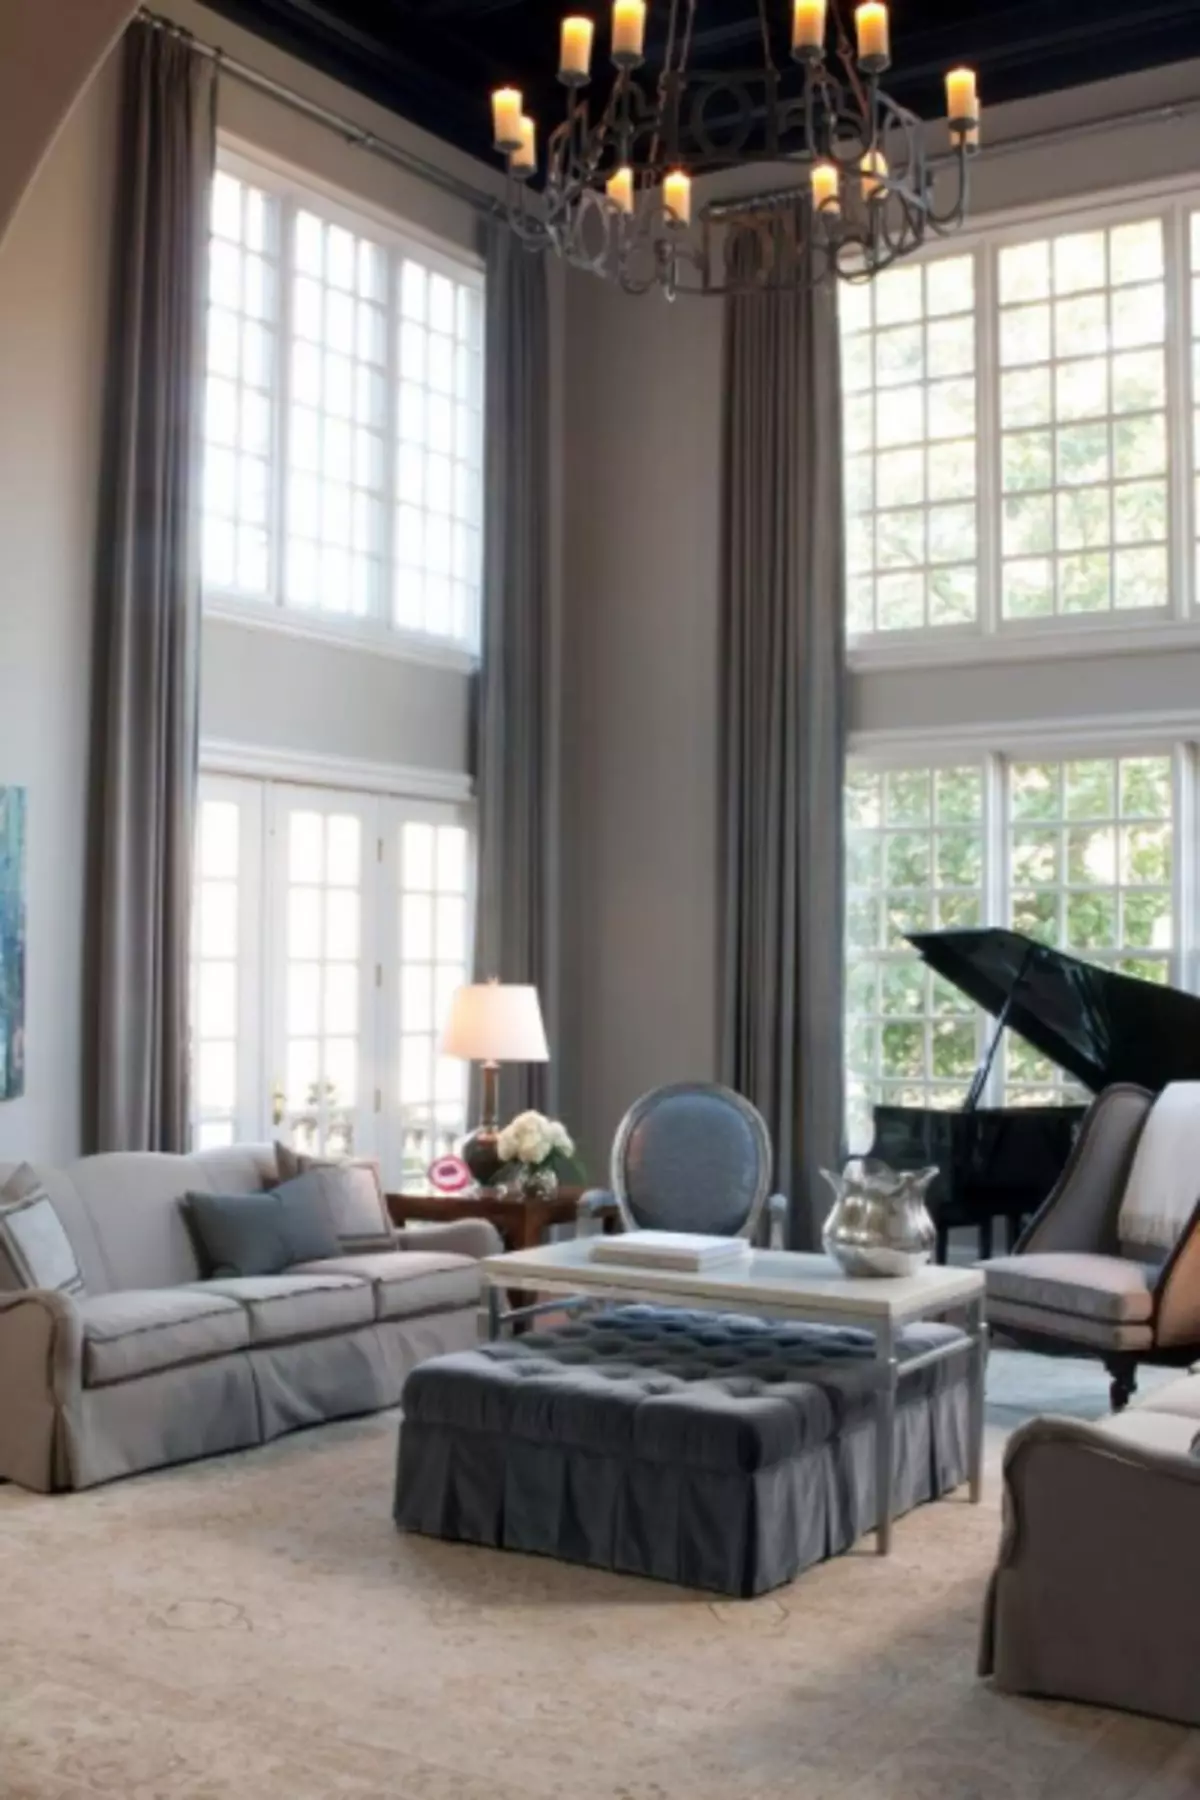 Sala de estar com duas janelas - 85 fotos de opções de design elegante